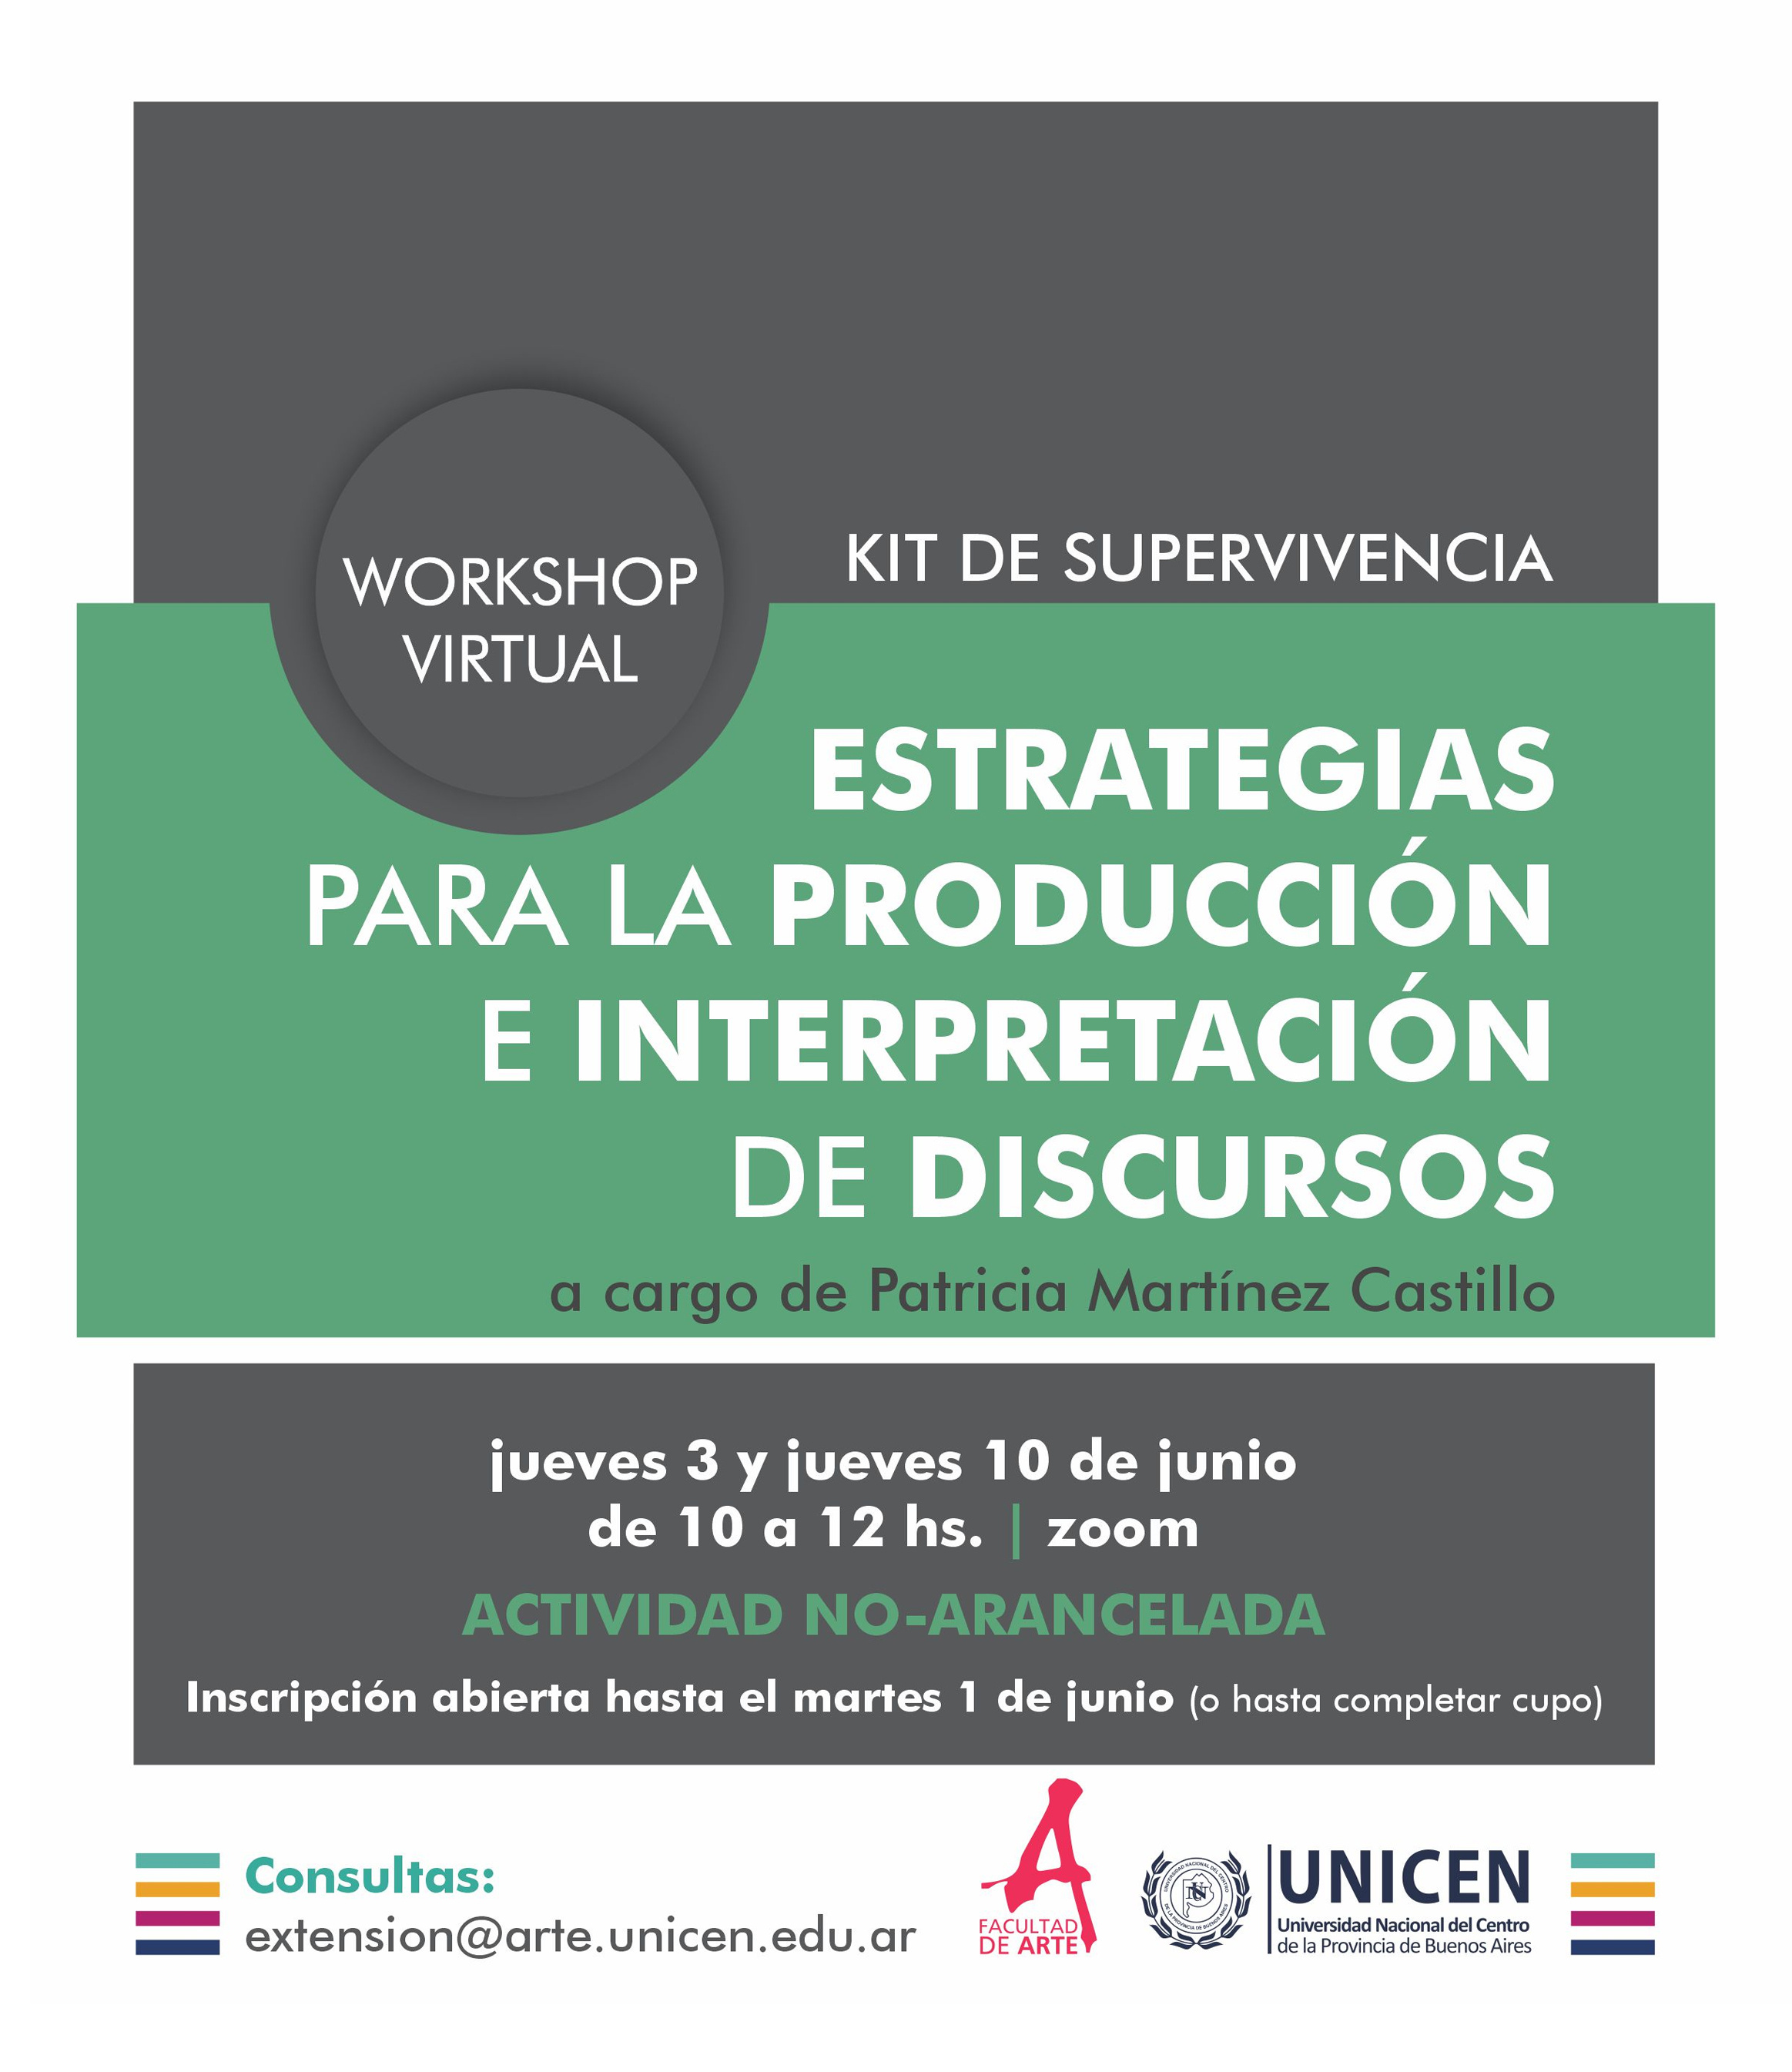 Workshop 'Kit de supervivencia. Estrategias para la producción e interpretación de discursos' por Patricia Martínez Castillo